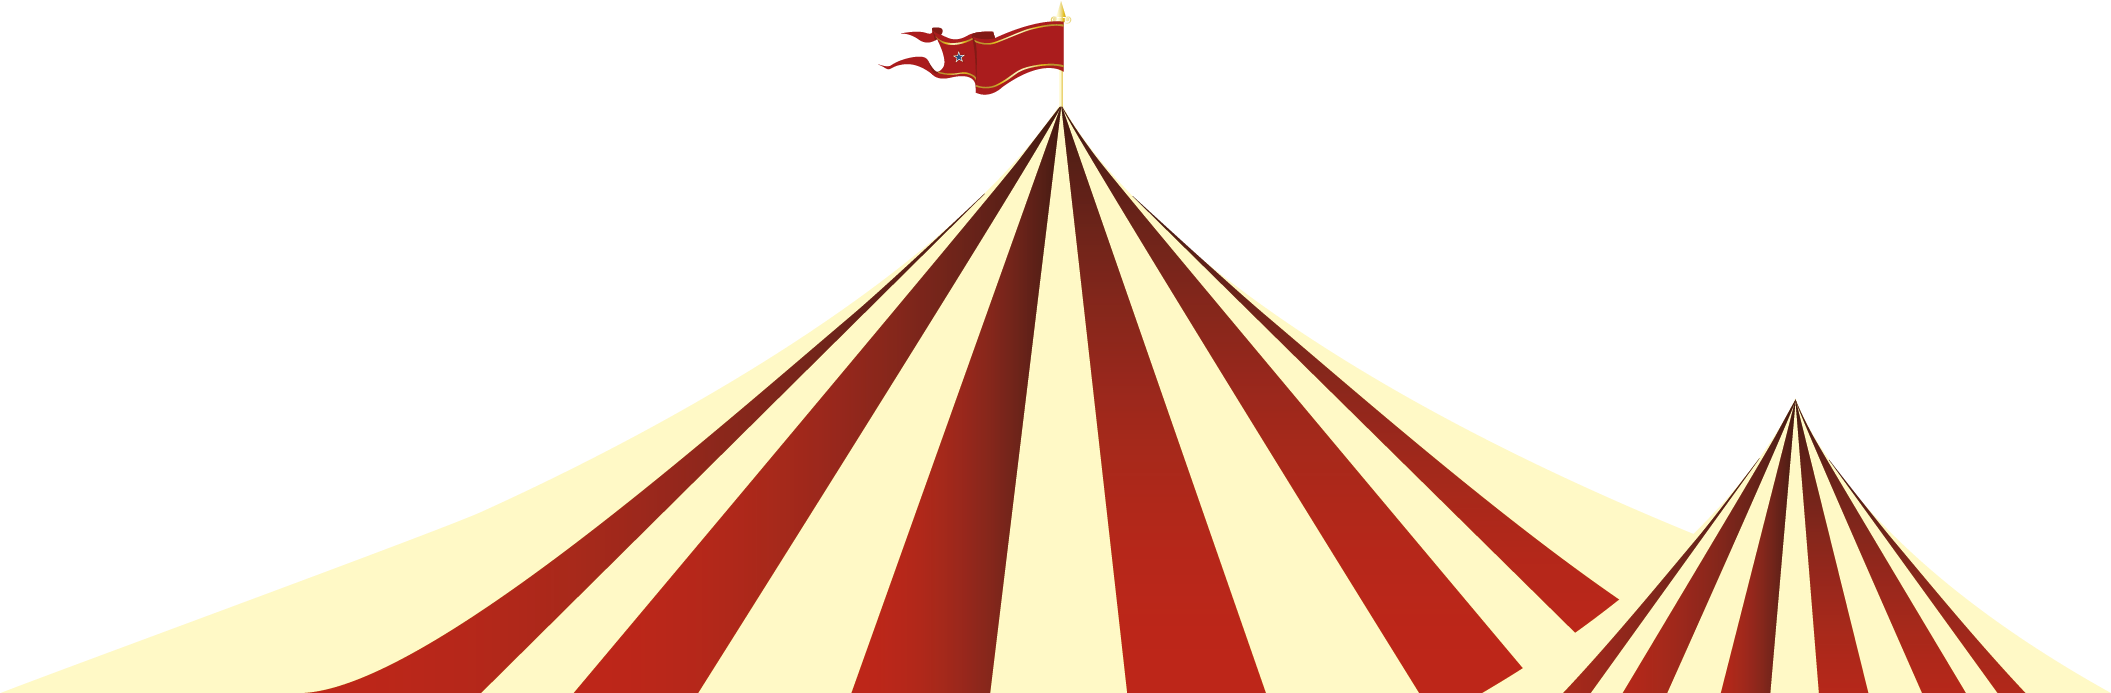 Circus Tent Peak Festival Graphic PNG